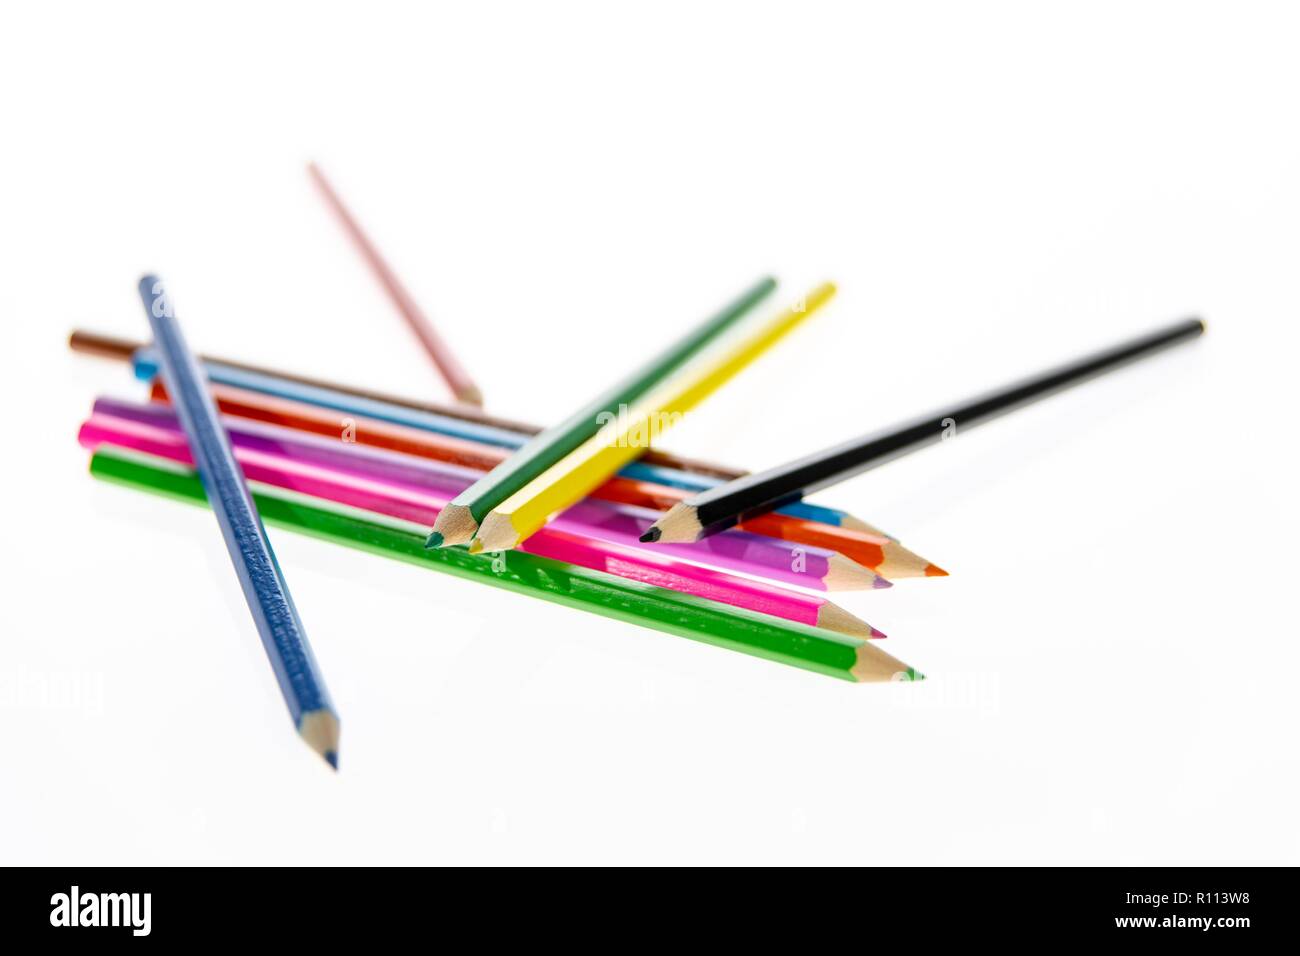 Crayons de couleur disposés au hasard sur un fond blanc. Crayons de couleur. Les crayons sont affûtés prêts pour le dessin ou croquis. Banque D'Images